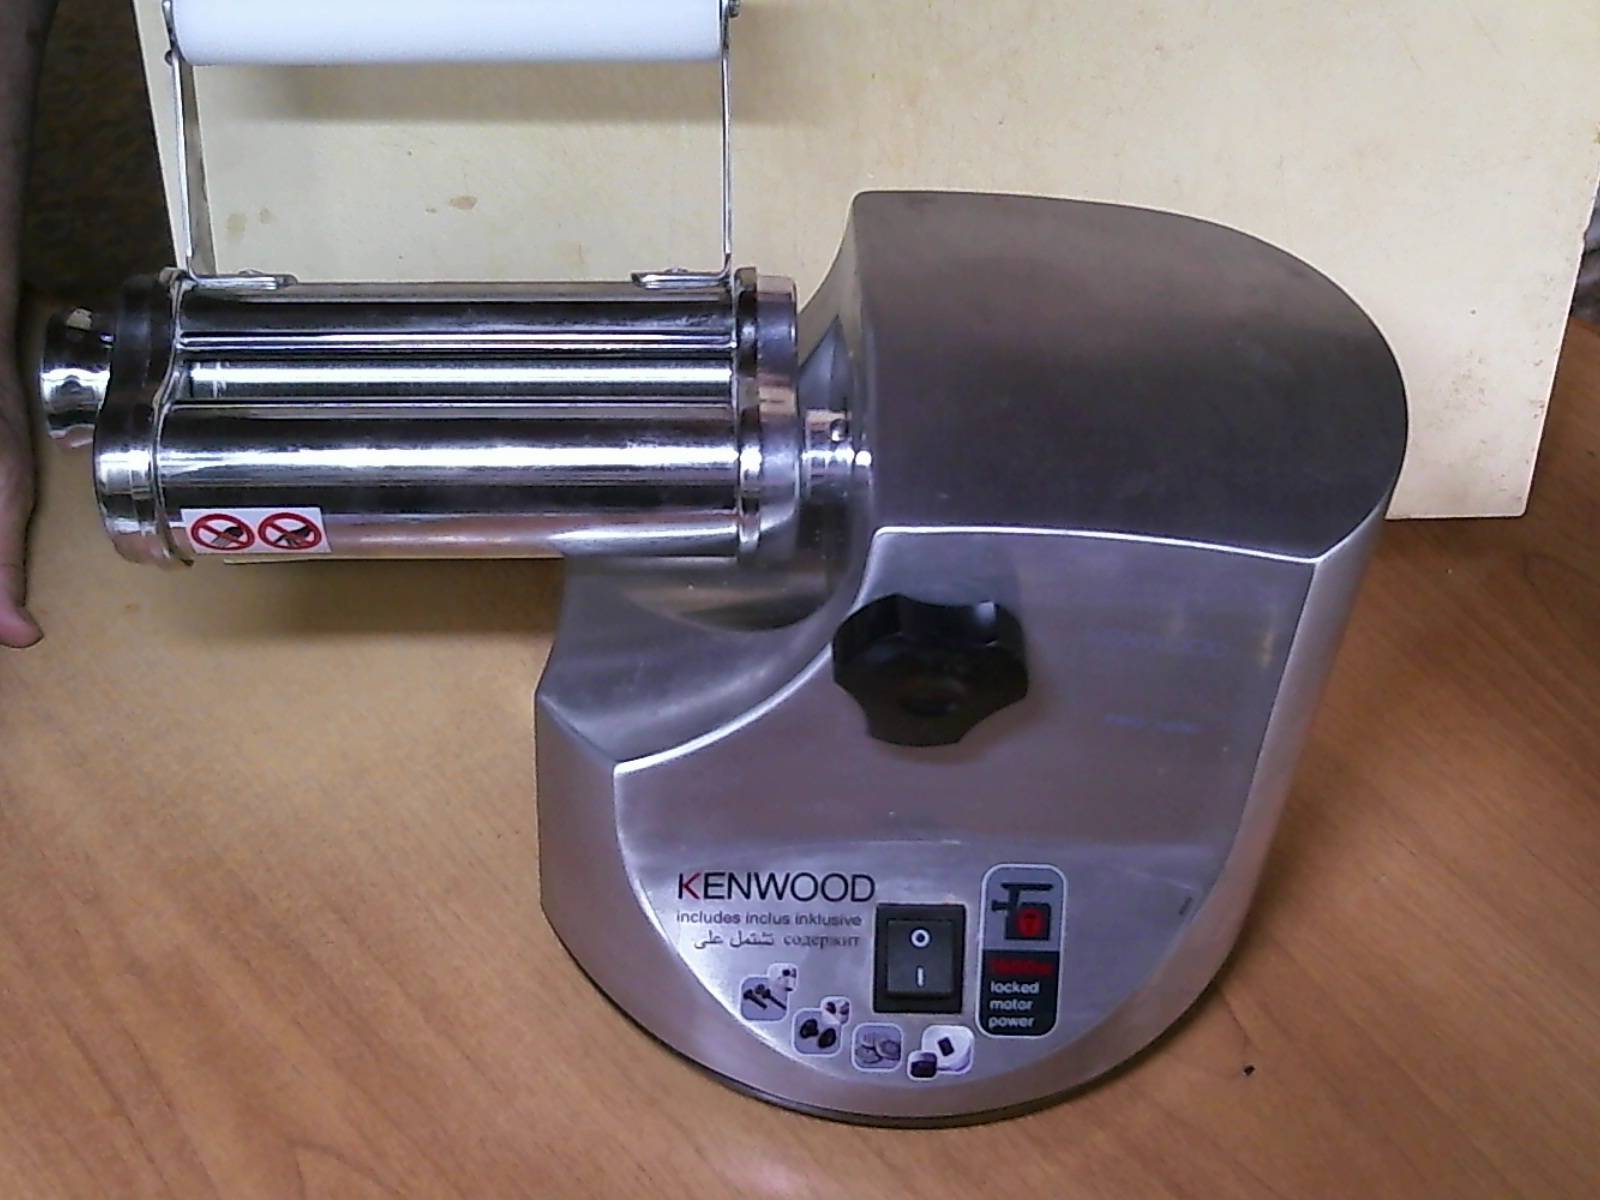 Maszyna kuchenna Kenwood (2)